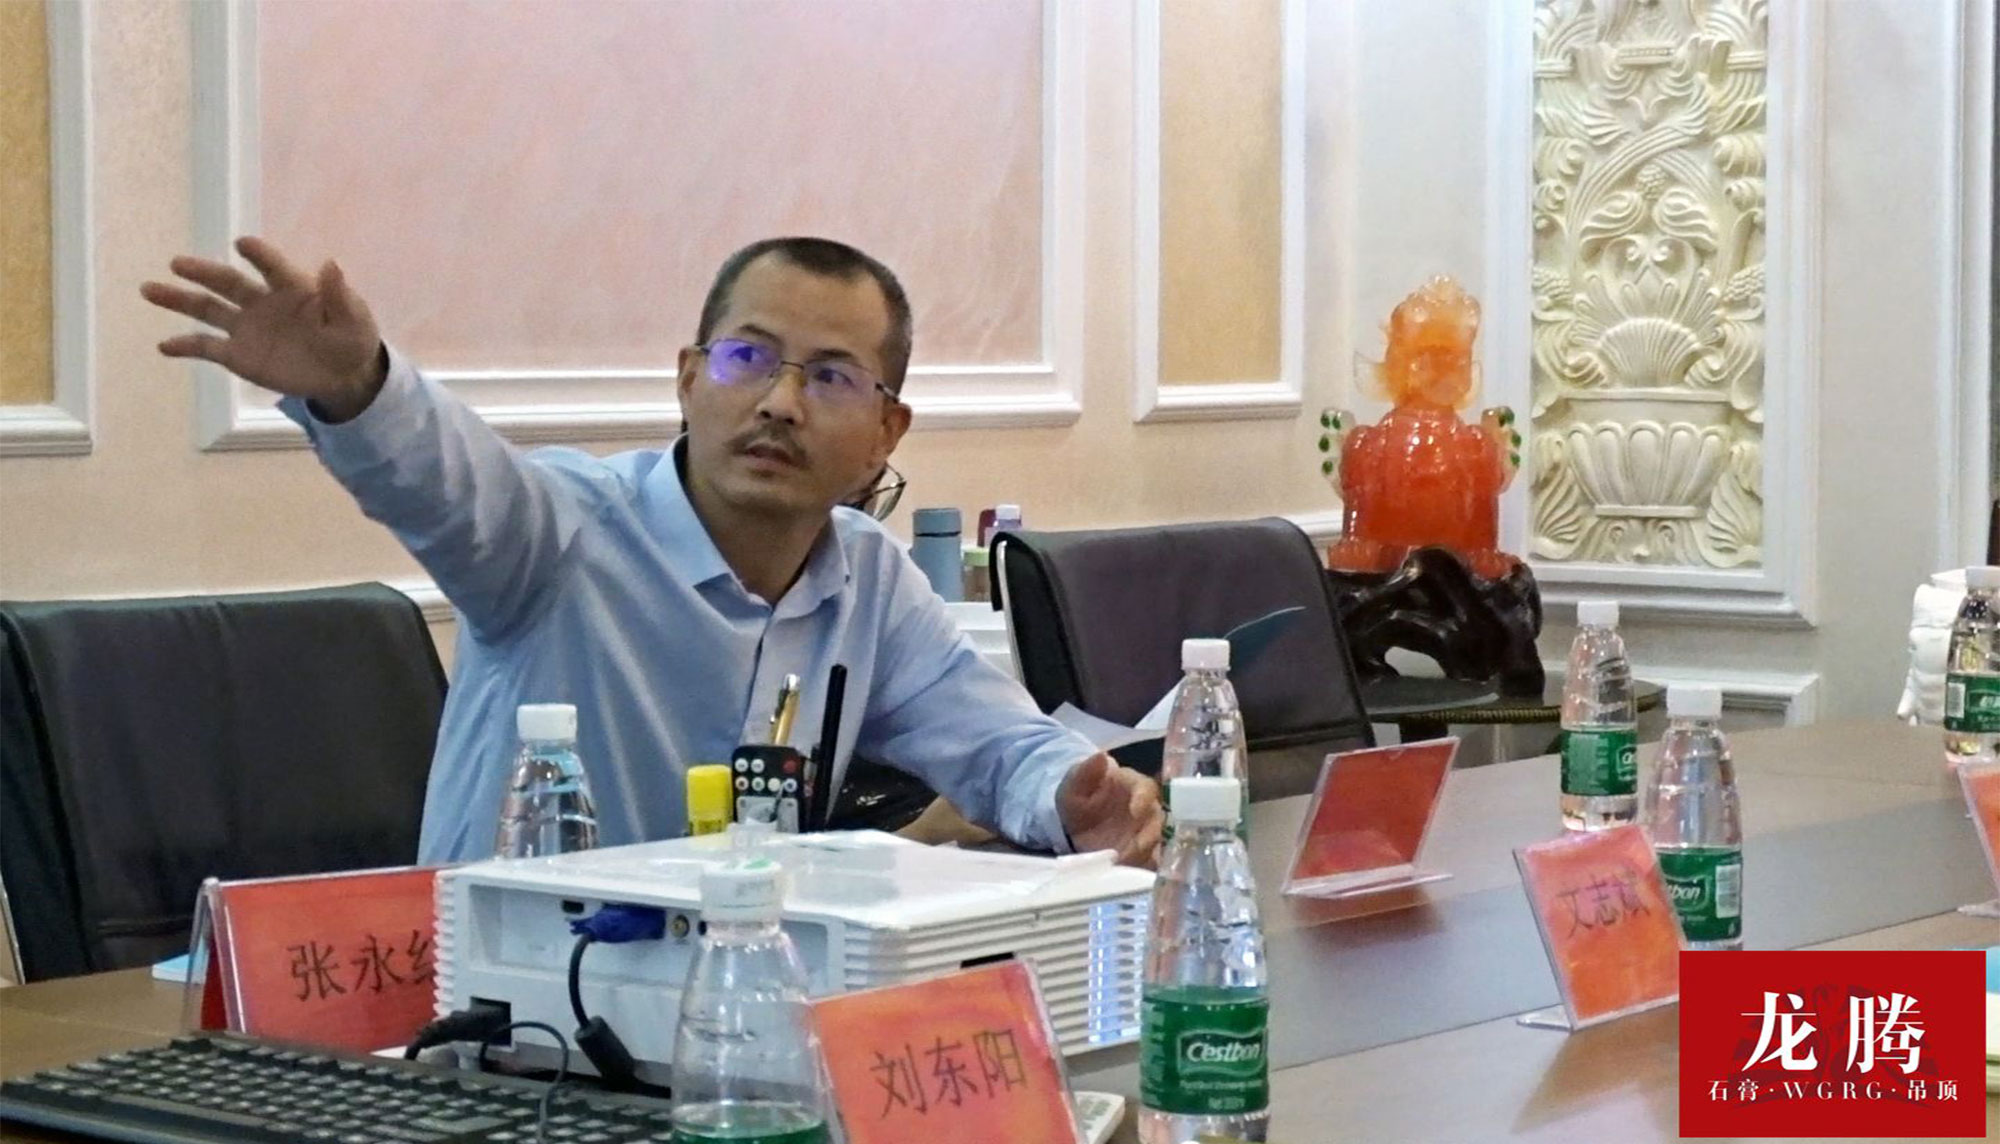 湖南迈辉环保材料有限公司董事长胡总座谈会中展示公司产品及运营情况